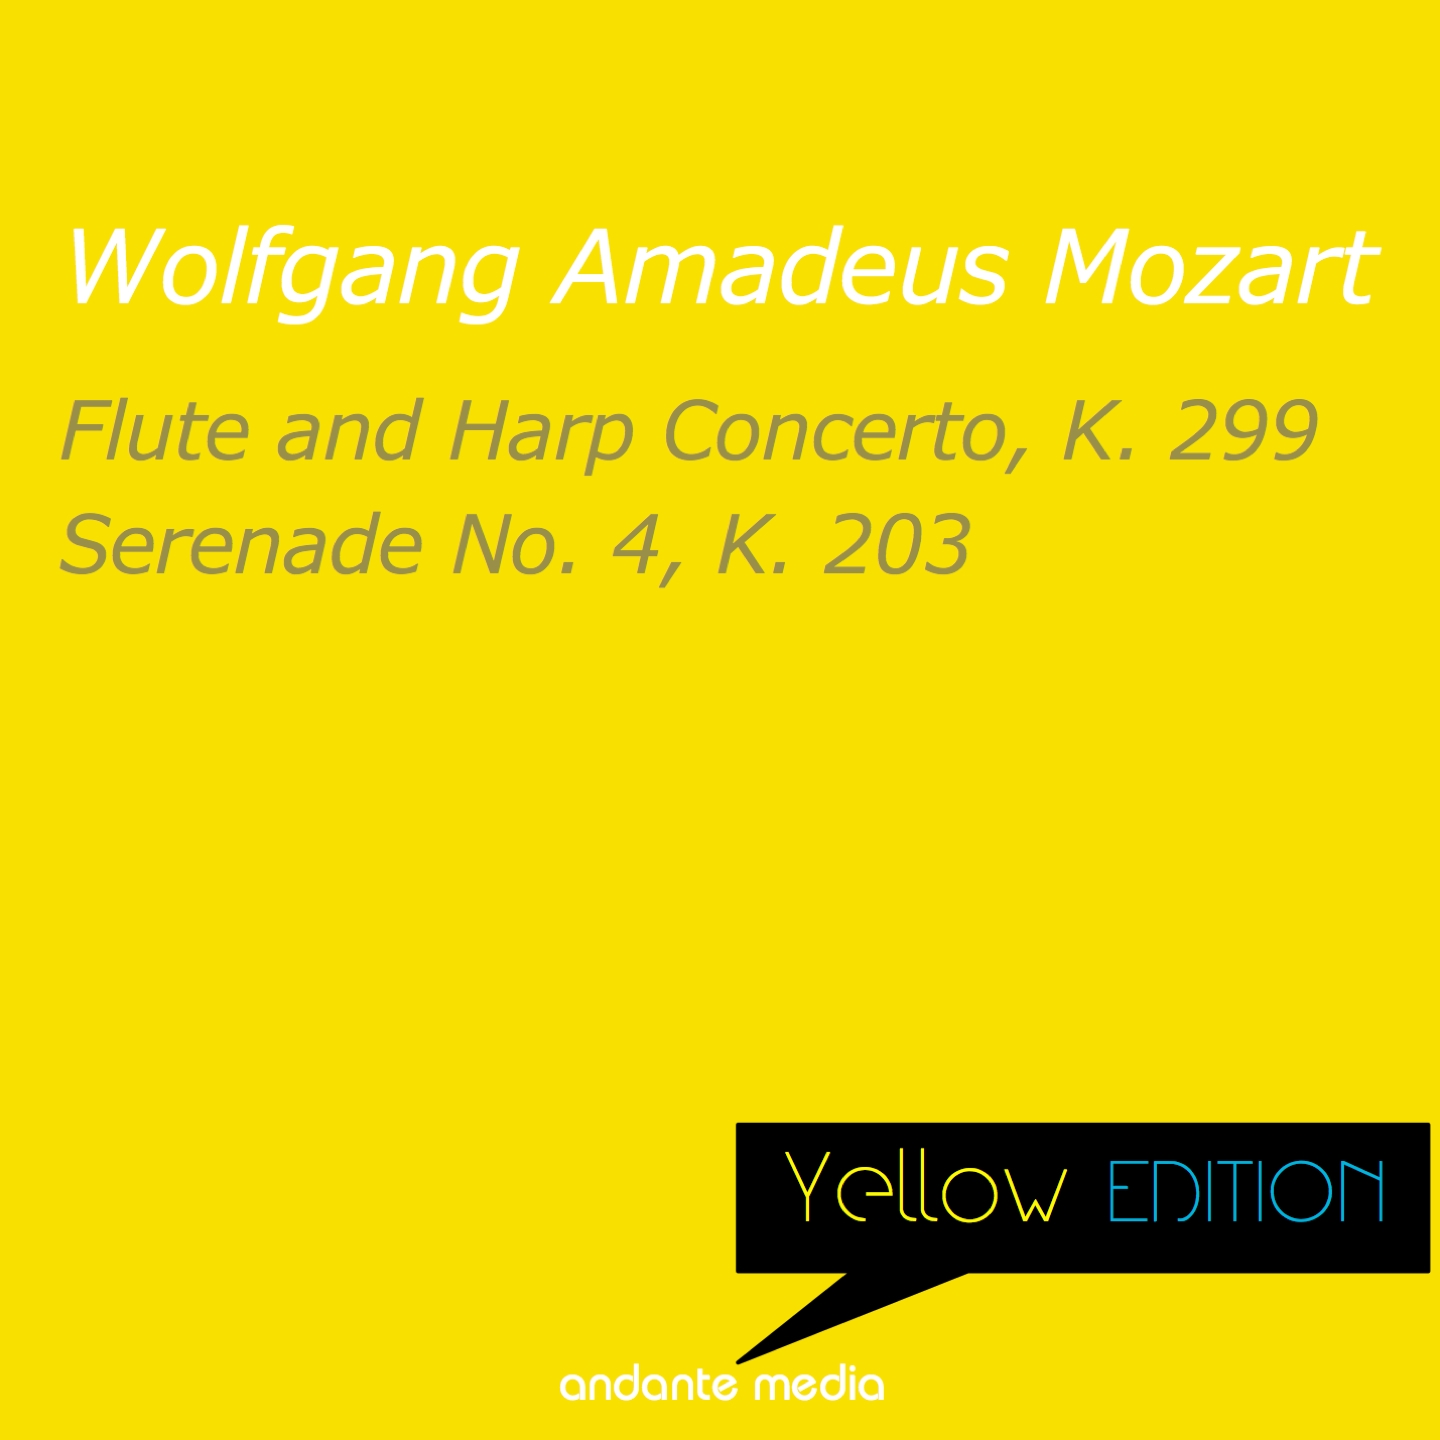 Yellow Edition - Mozart: Flute and Harp Concerto, K. 299 & Serenade No. 4, K. 203